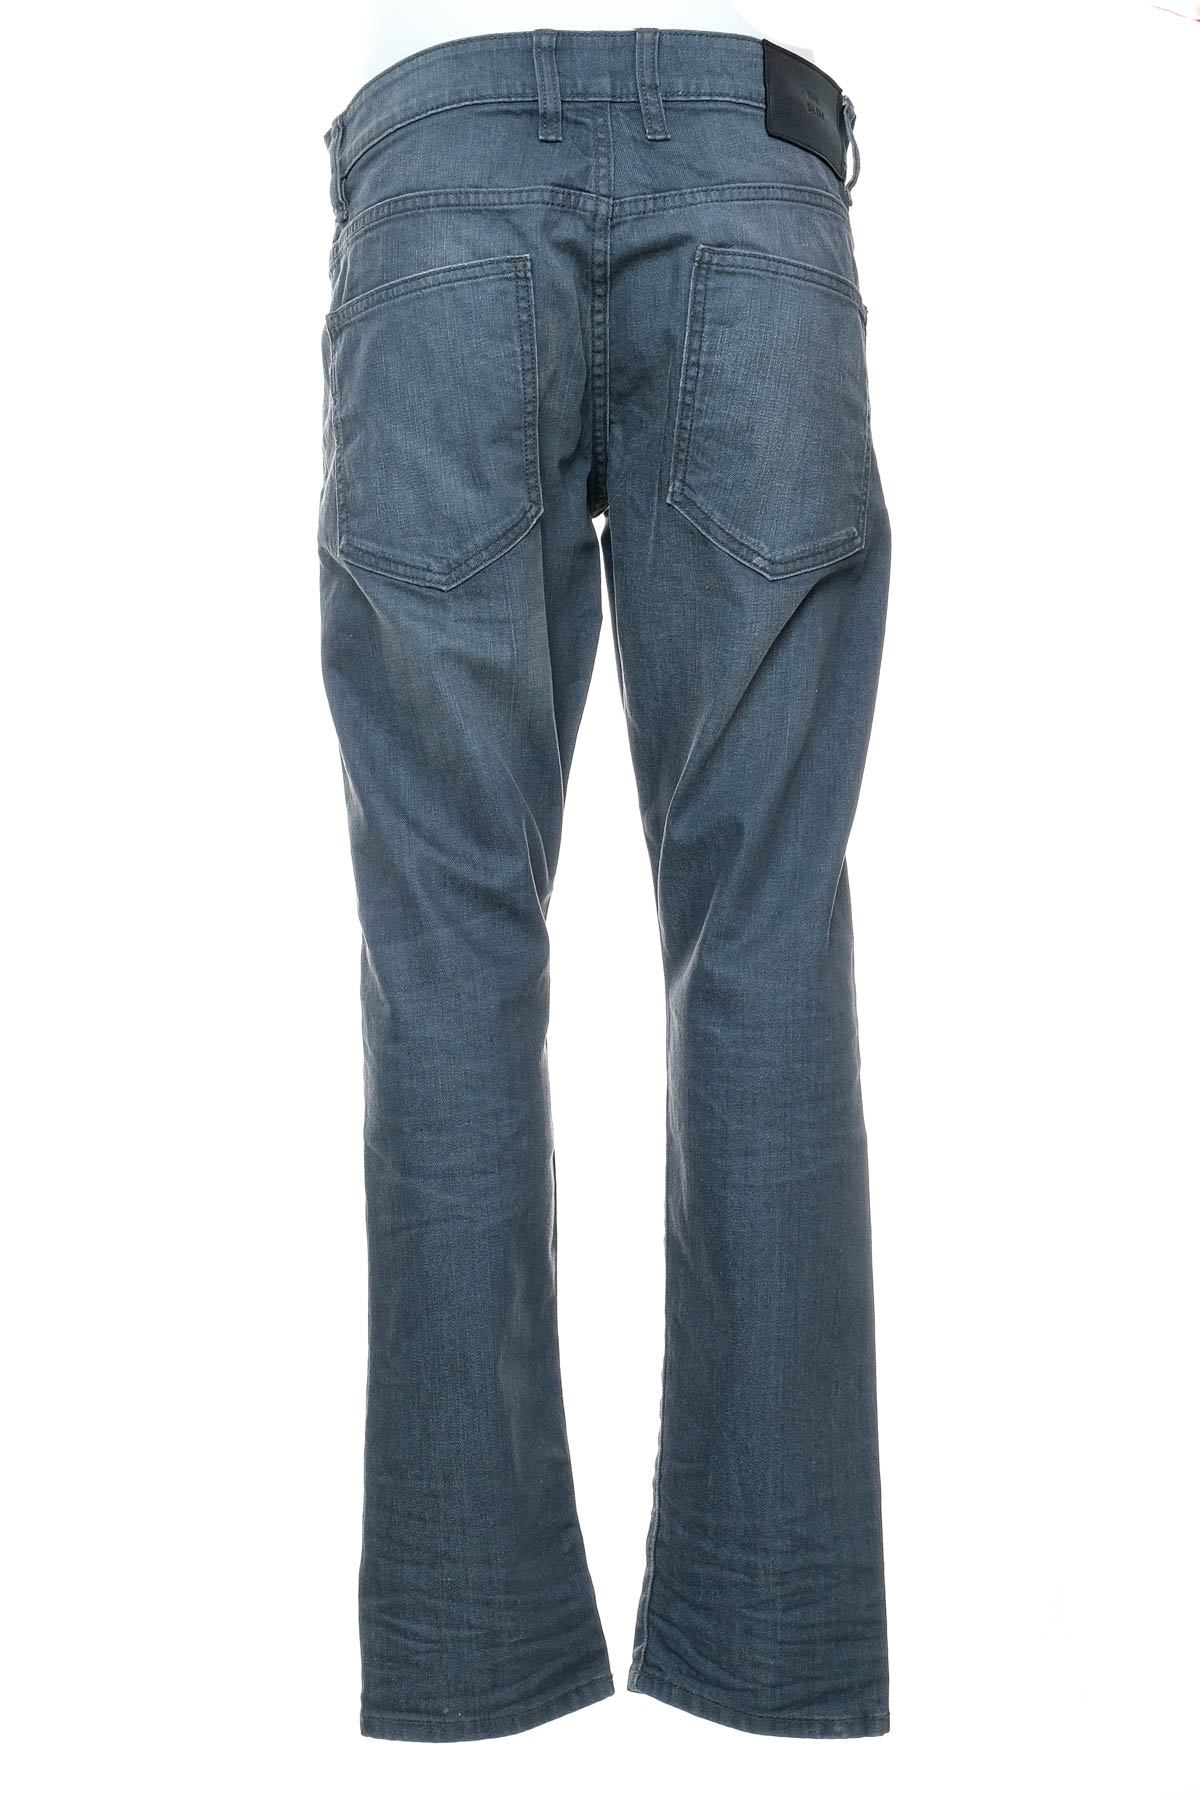 Jeans pentru bărbăți - C&A - 1